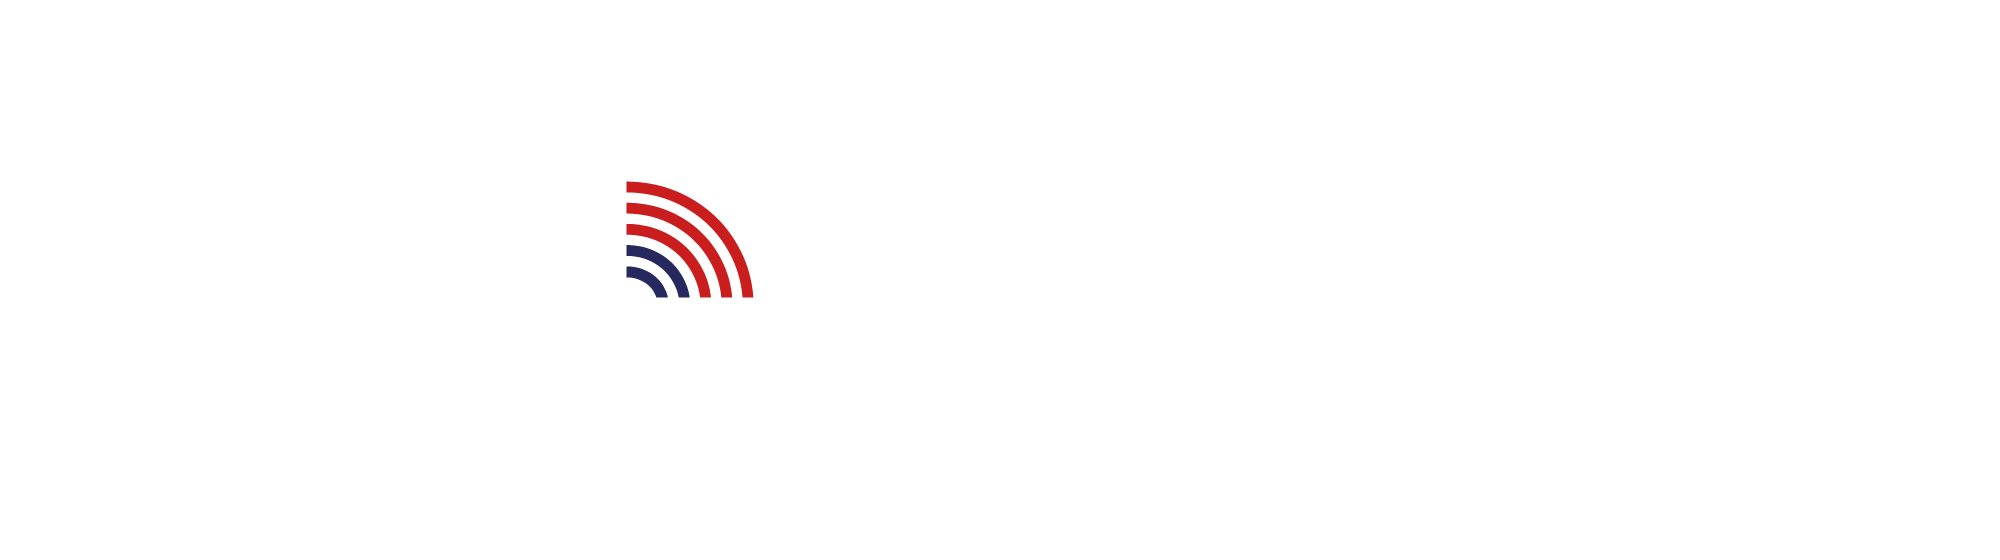 BUSINESS SUMMIT ビジネスサミット